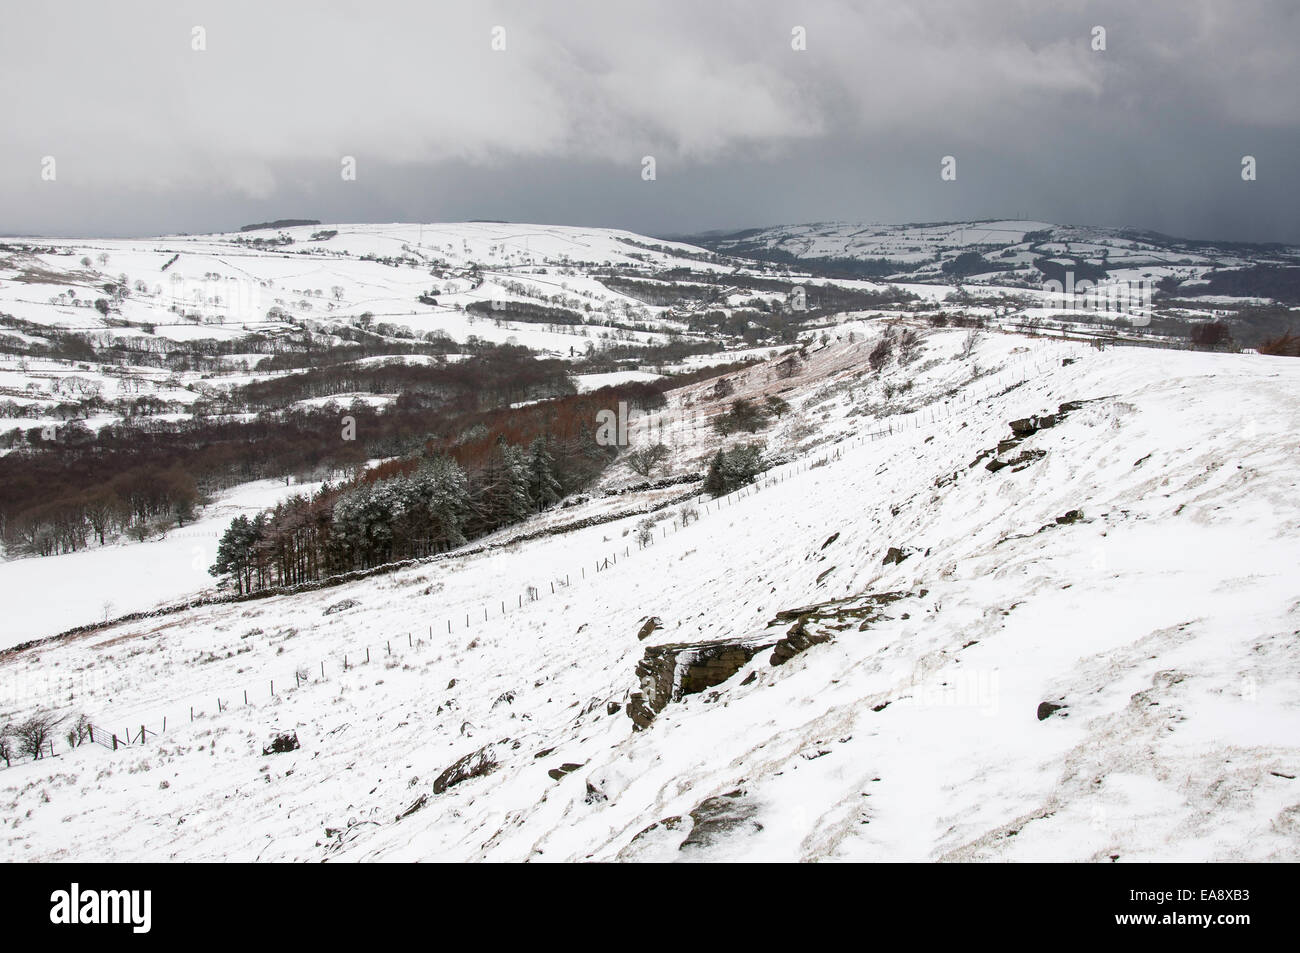 Eine englische Schneelandschaft in Nordengland. Schnee mit Gewitterwolken bereit, die Szene zu verschlingen. Stockfoto